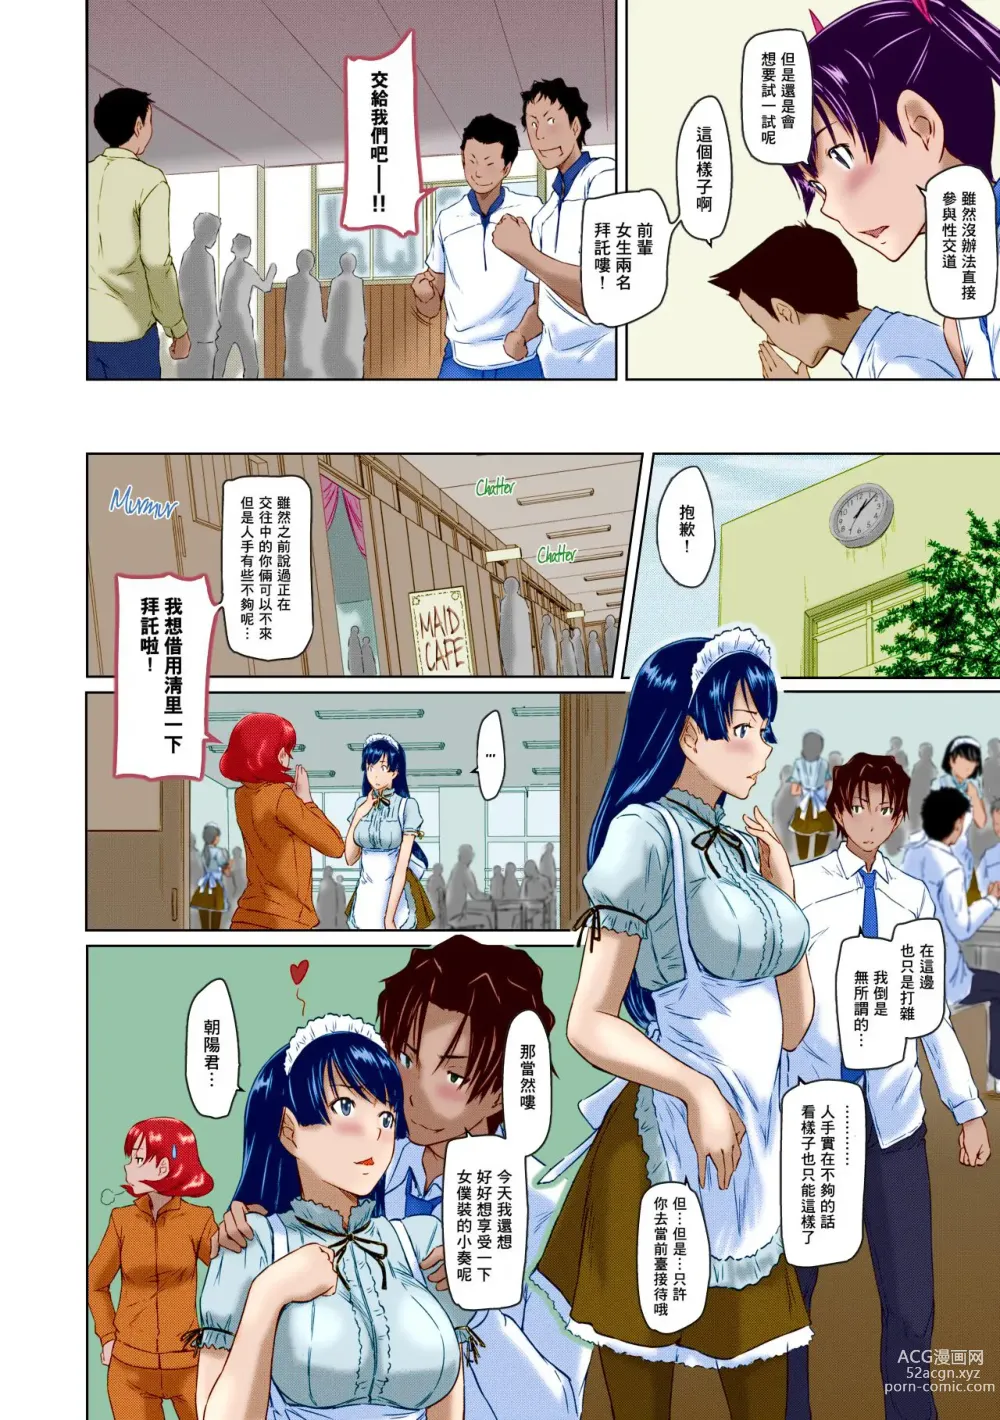 Page 197 of manga Suki ni nattara itchokusen!